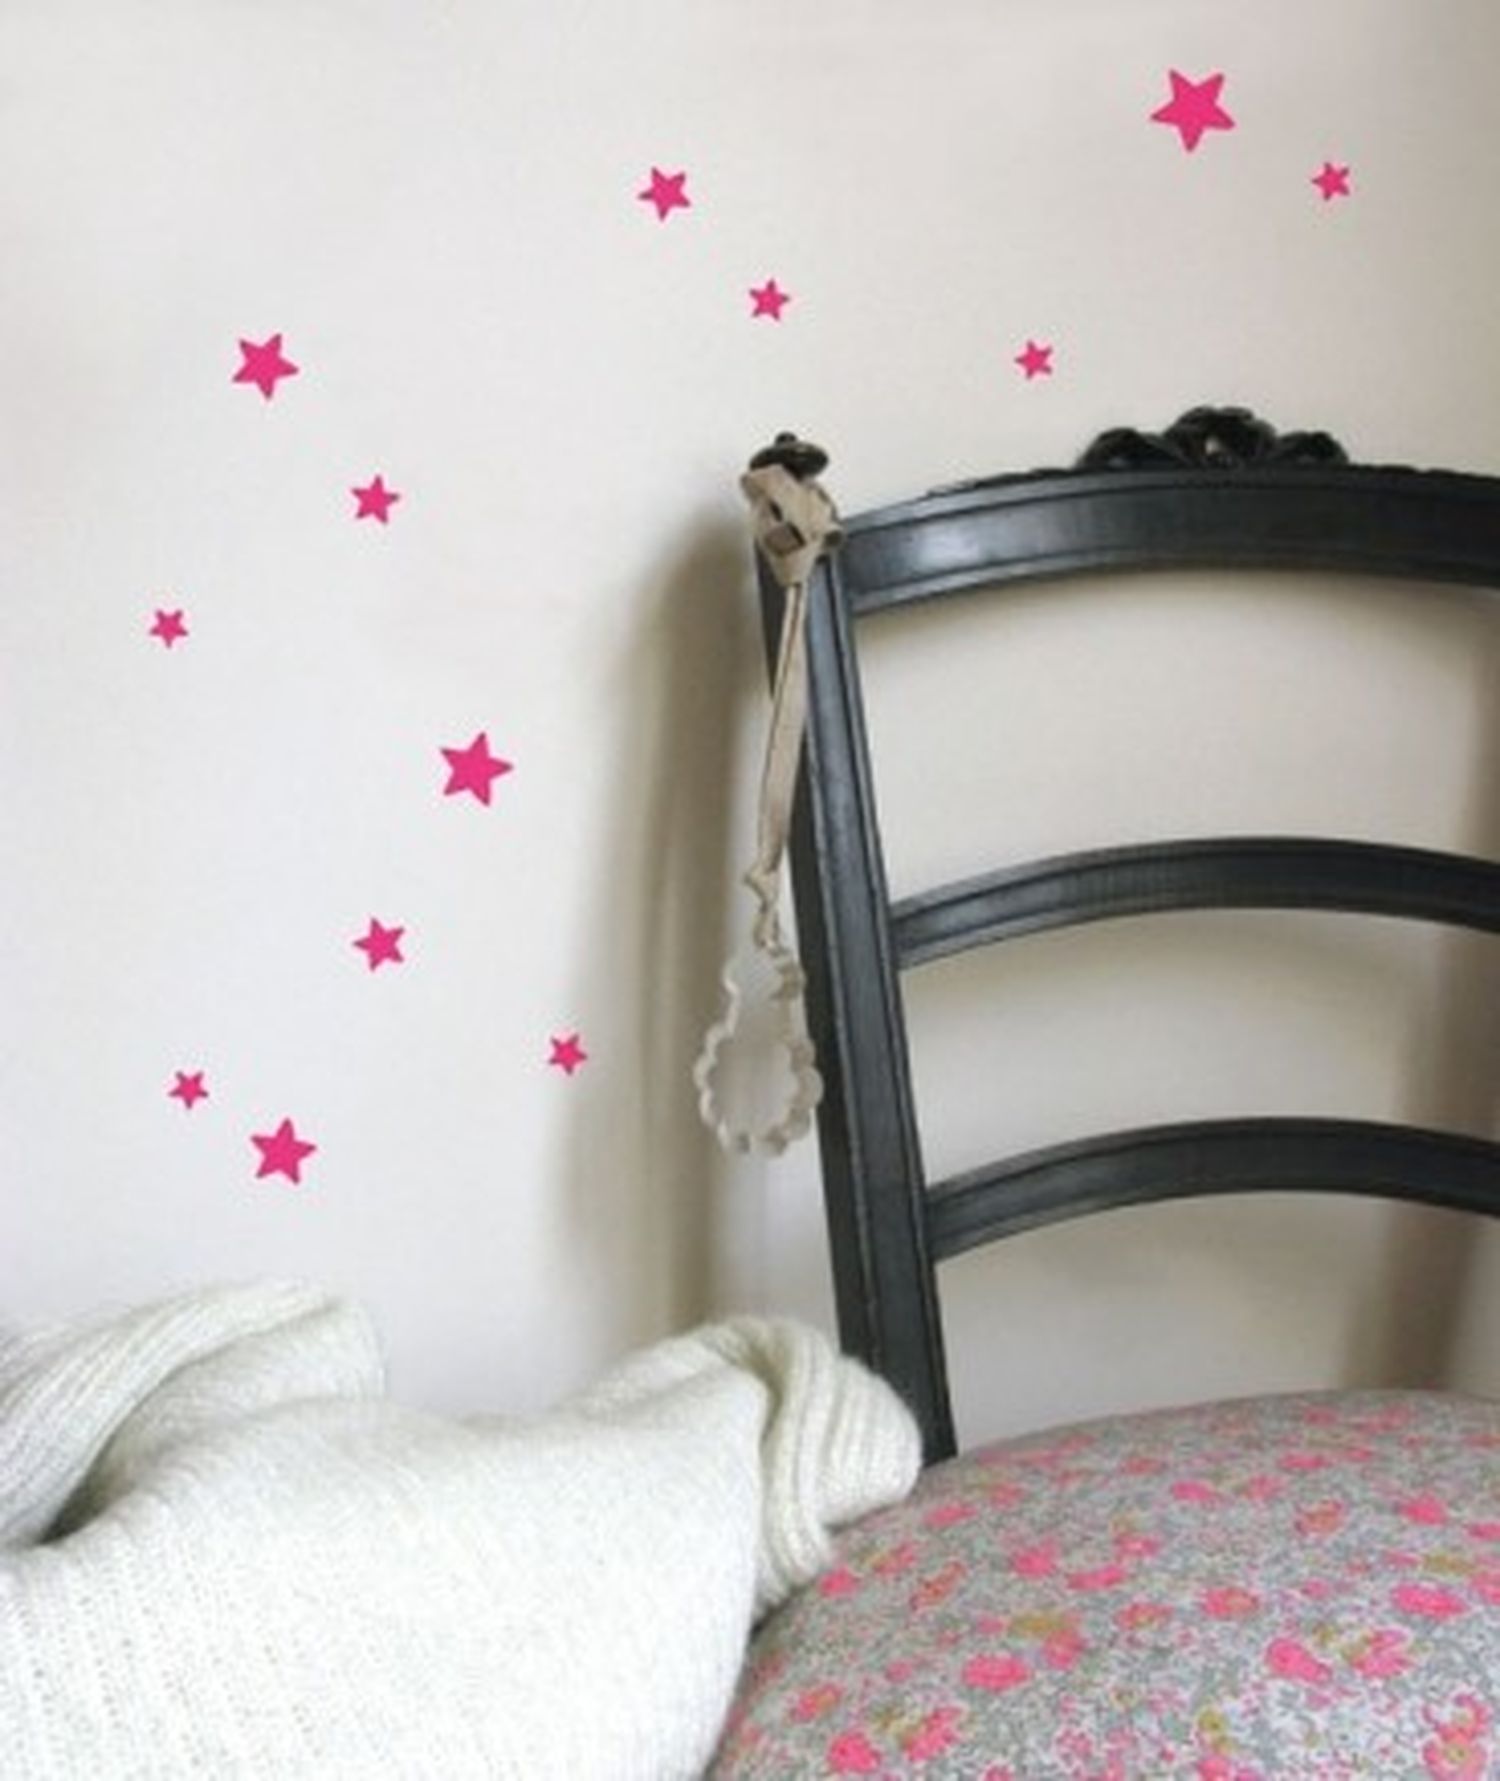 Stickers chambre fille, stickers muraux bébé, autocollant étoiles, formes,  rose et gris -  France